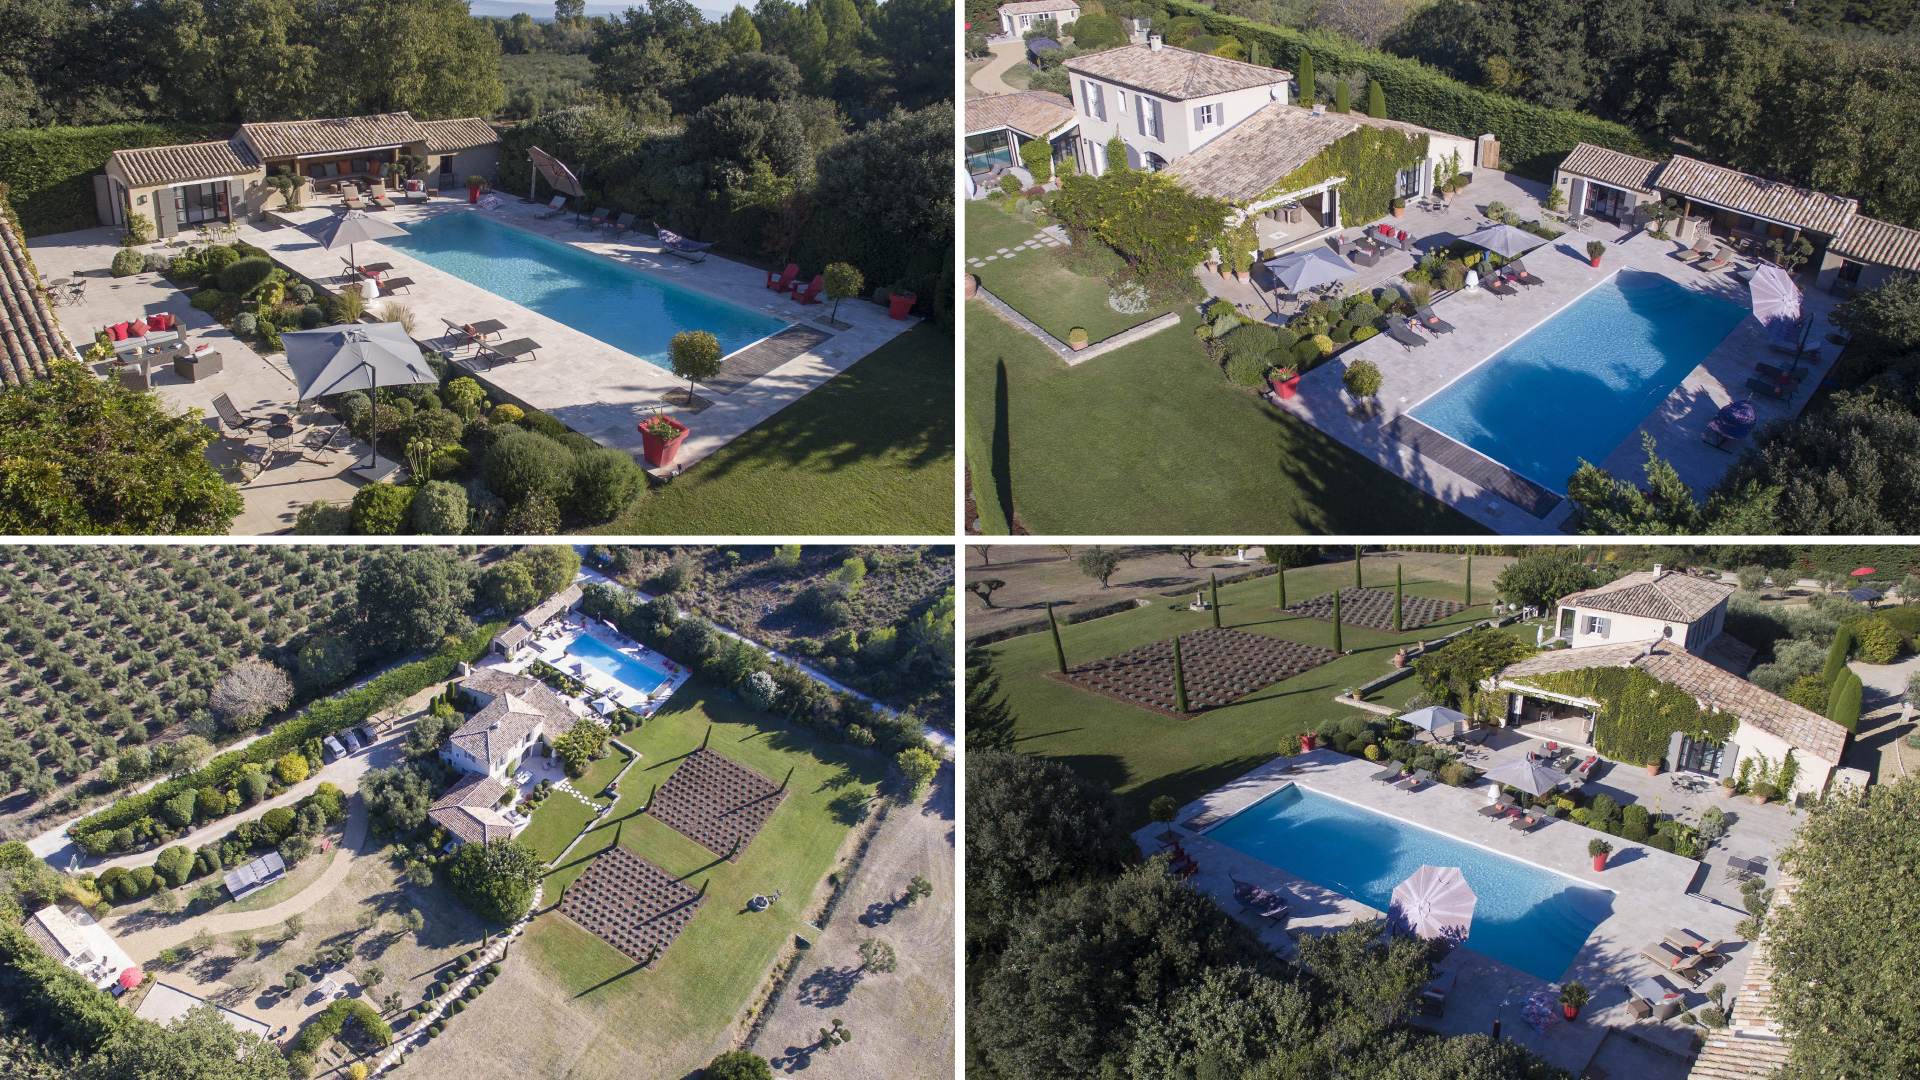 Mieten Sie eine außergewöhnliche Immobilie für Ihren Aufenthalt in der Provence